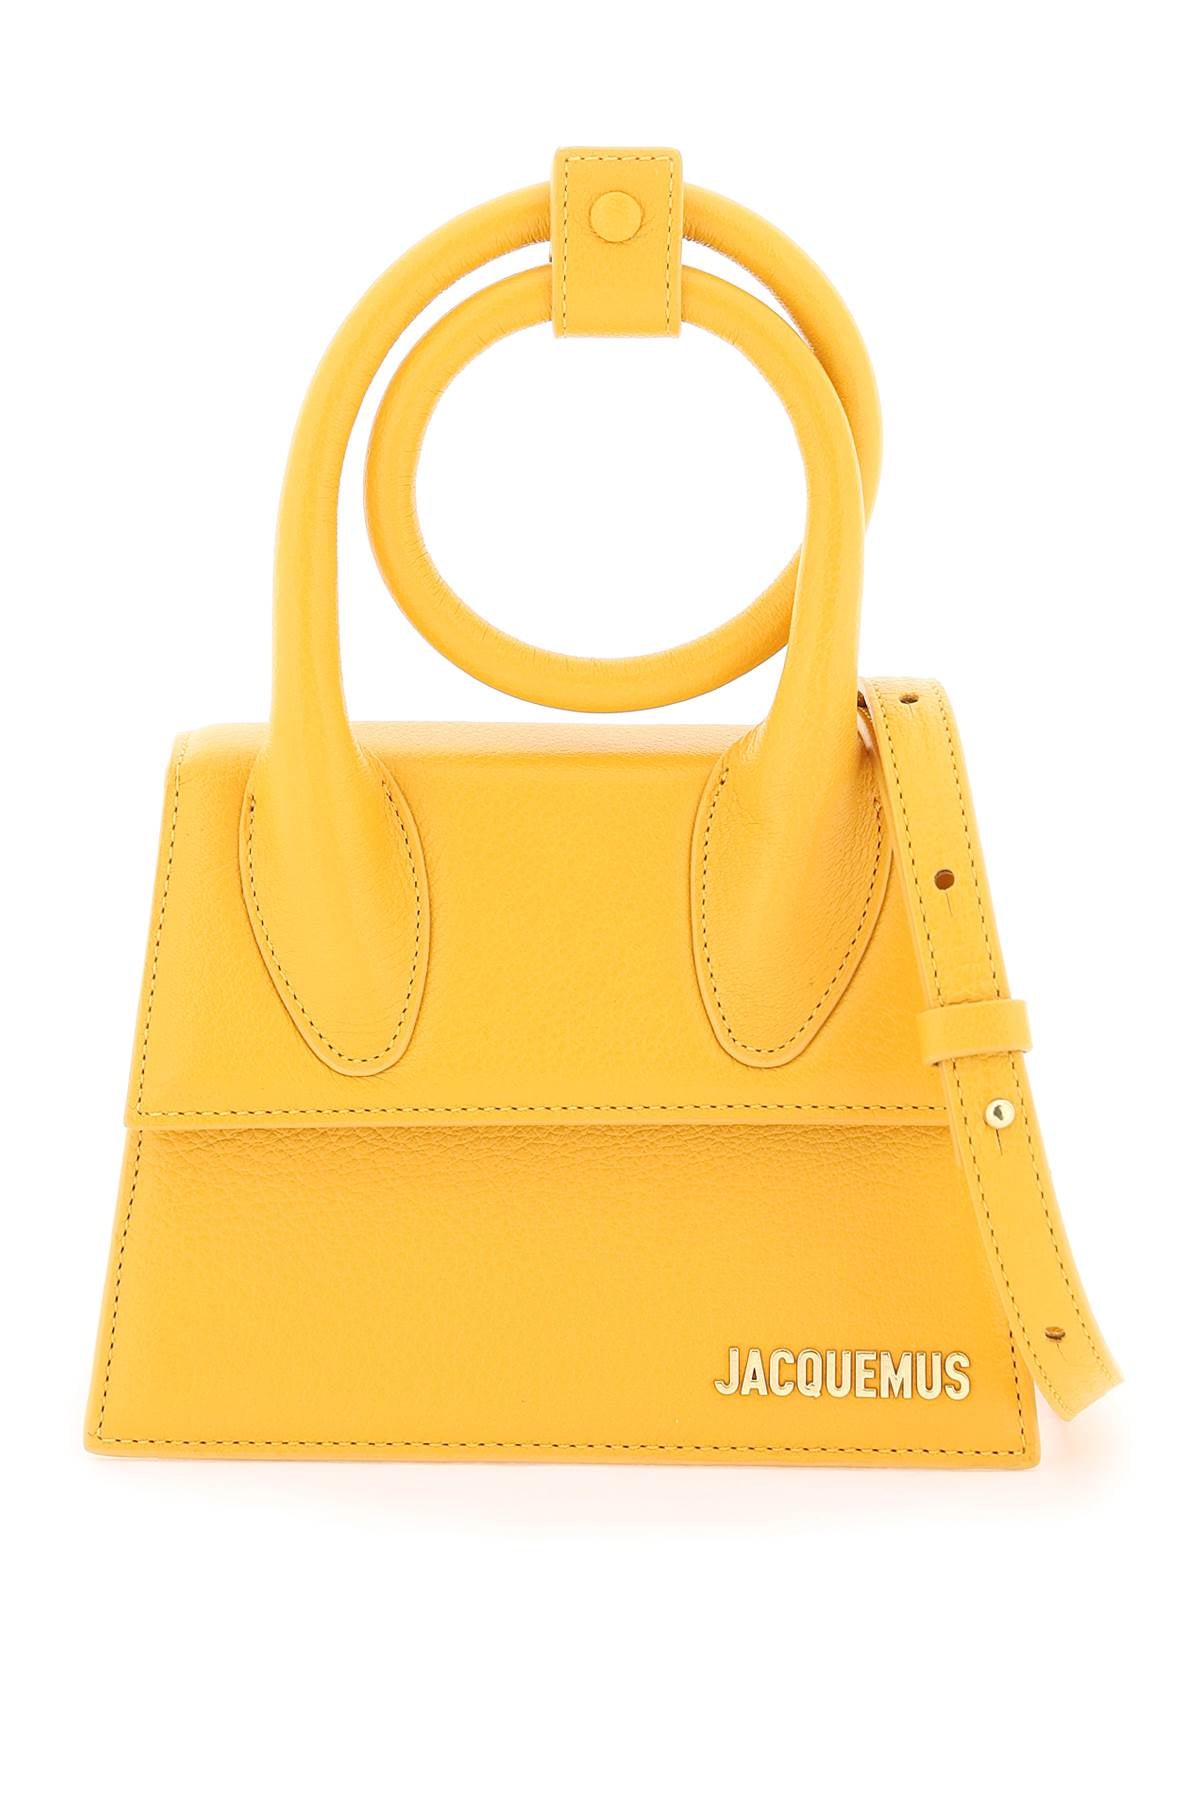 Jacquemus Le Chiquito Noeud Mini Handbag In Orange